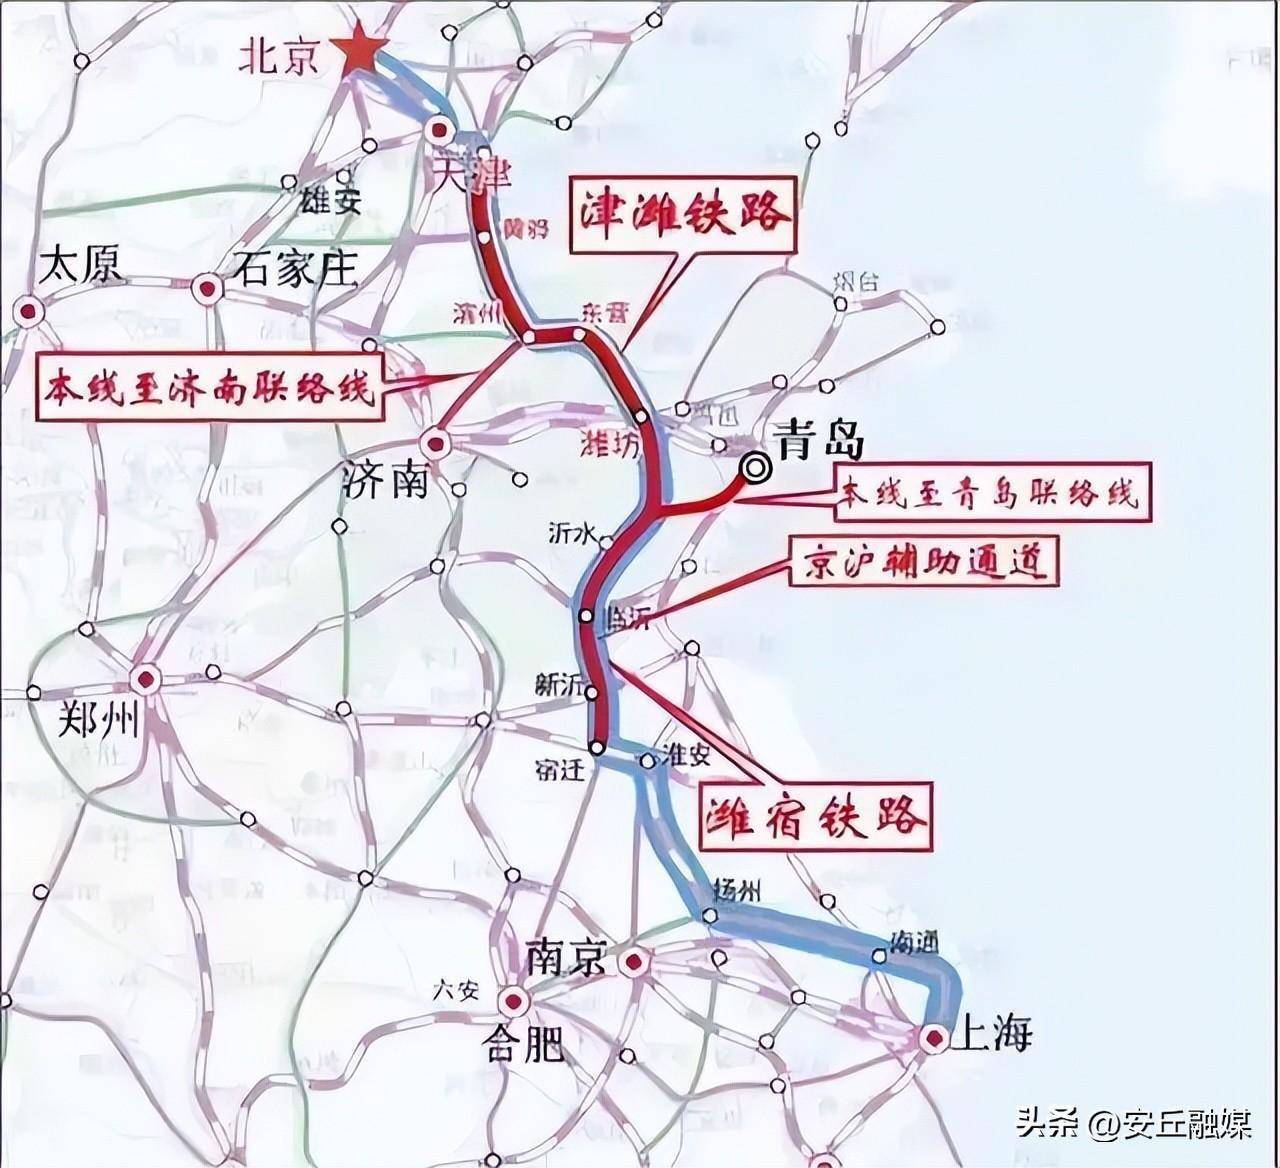 新设4个站点,京沪高铁辅助通道潍坊段全长约213公里,估算总投资398